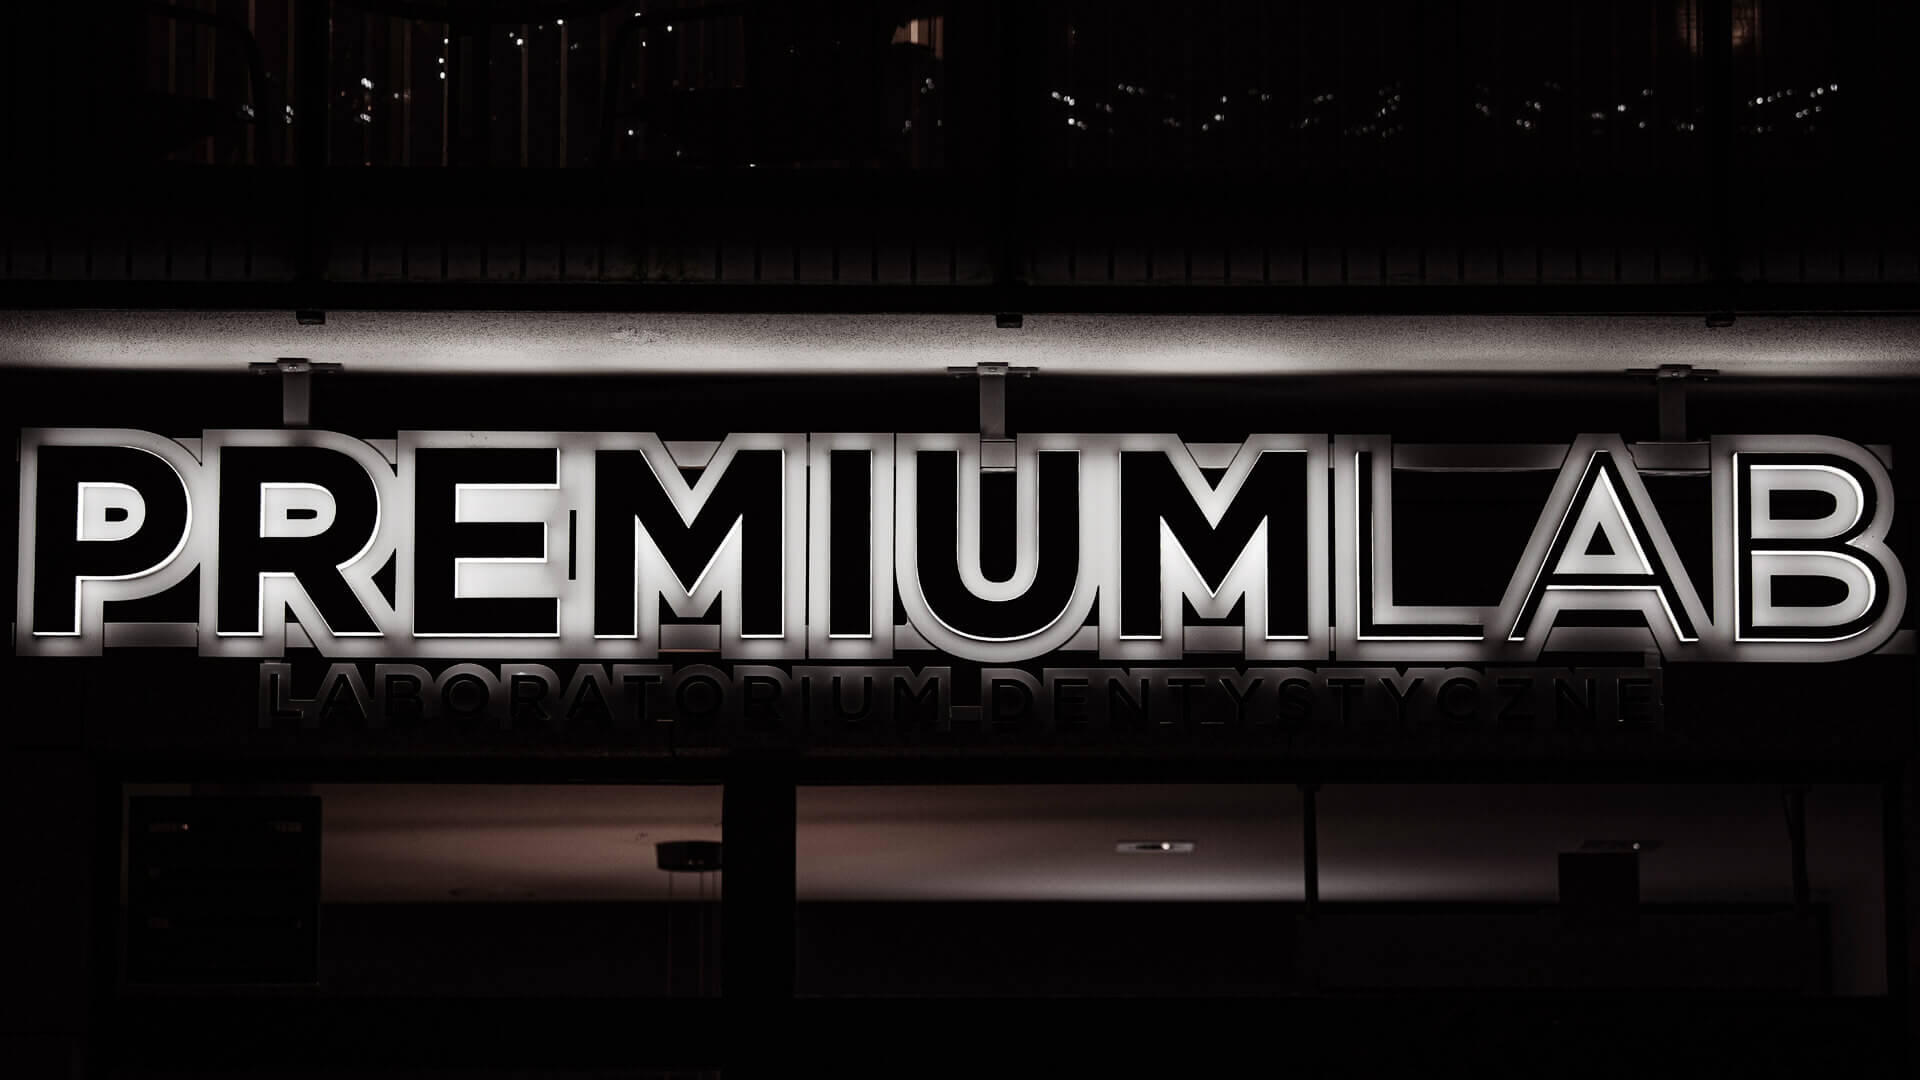 Premium LAB - Premium LAB Buchstaben, LED Standlicht, hochwertig.